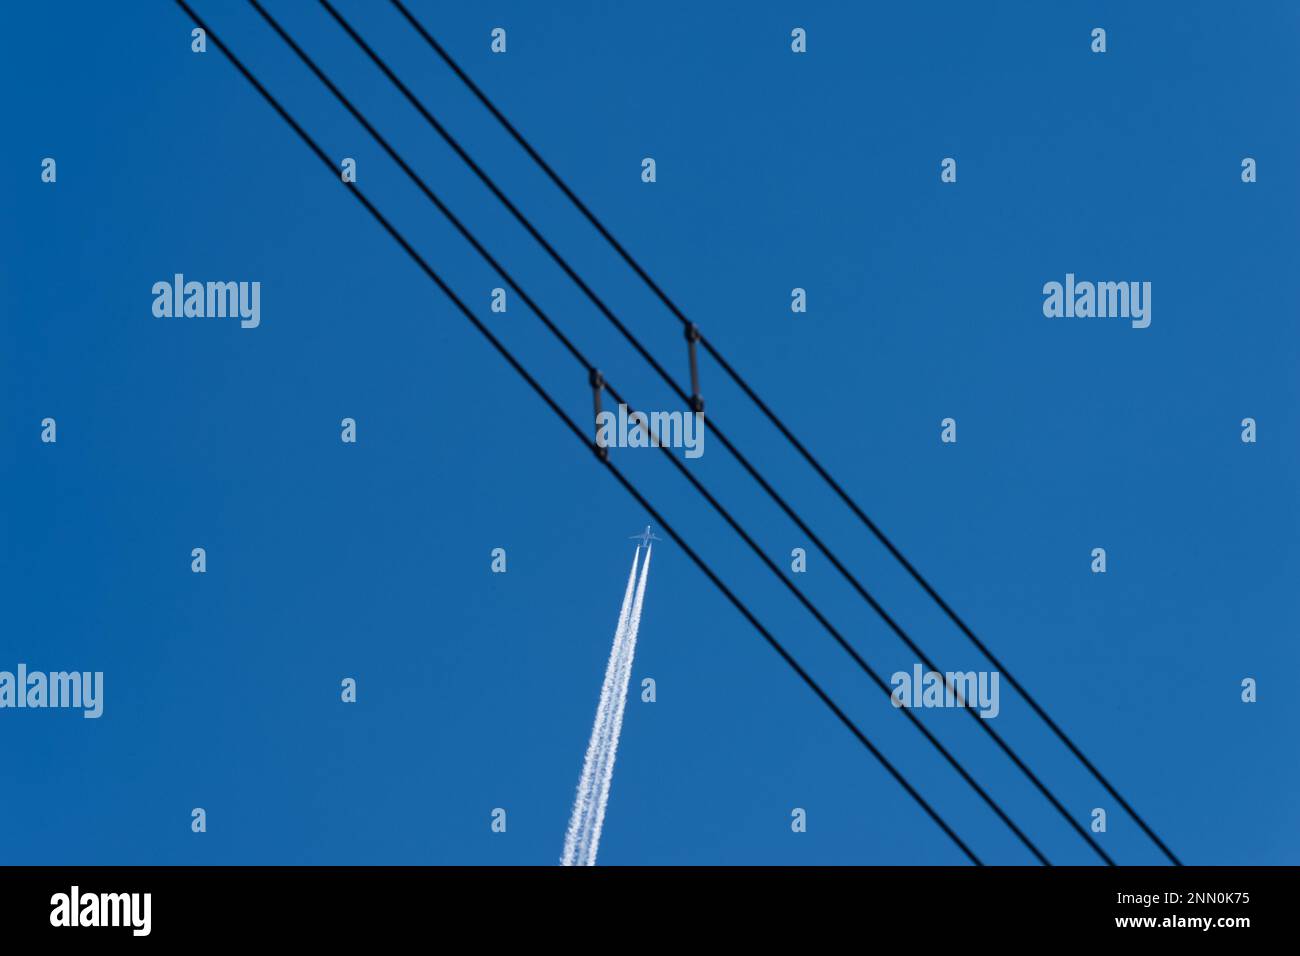 Ein Flugzeug in klarem blauem Himmel mit seinem Kontrast, der scheinbar eine Reihe von Stromkabeln überquert Stockfoto